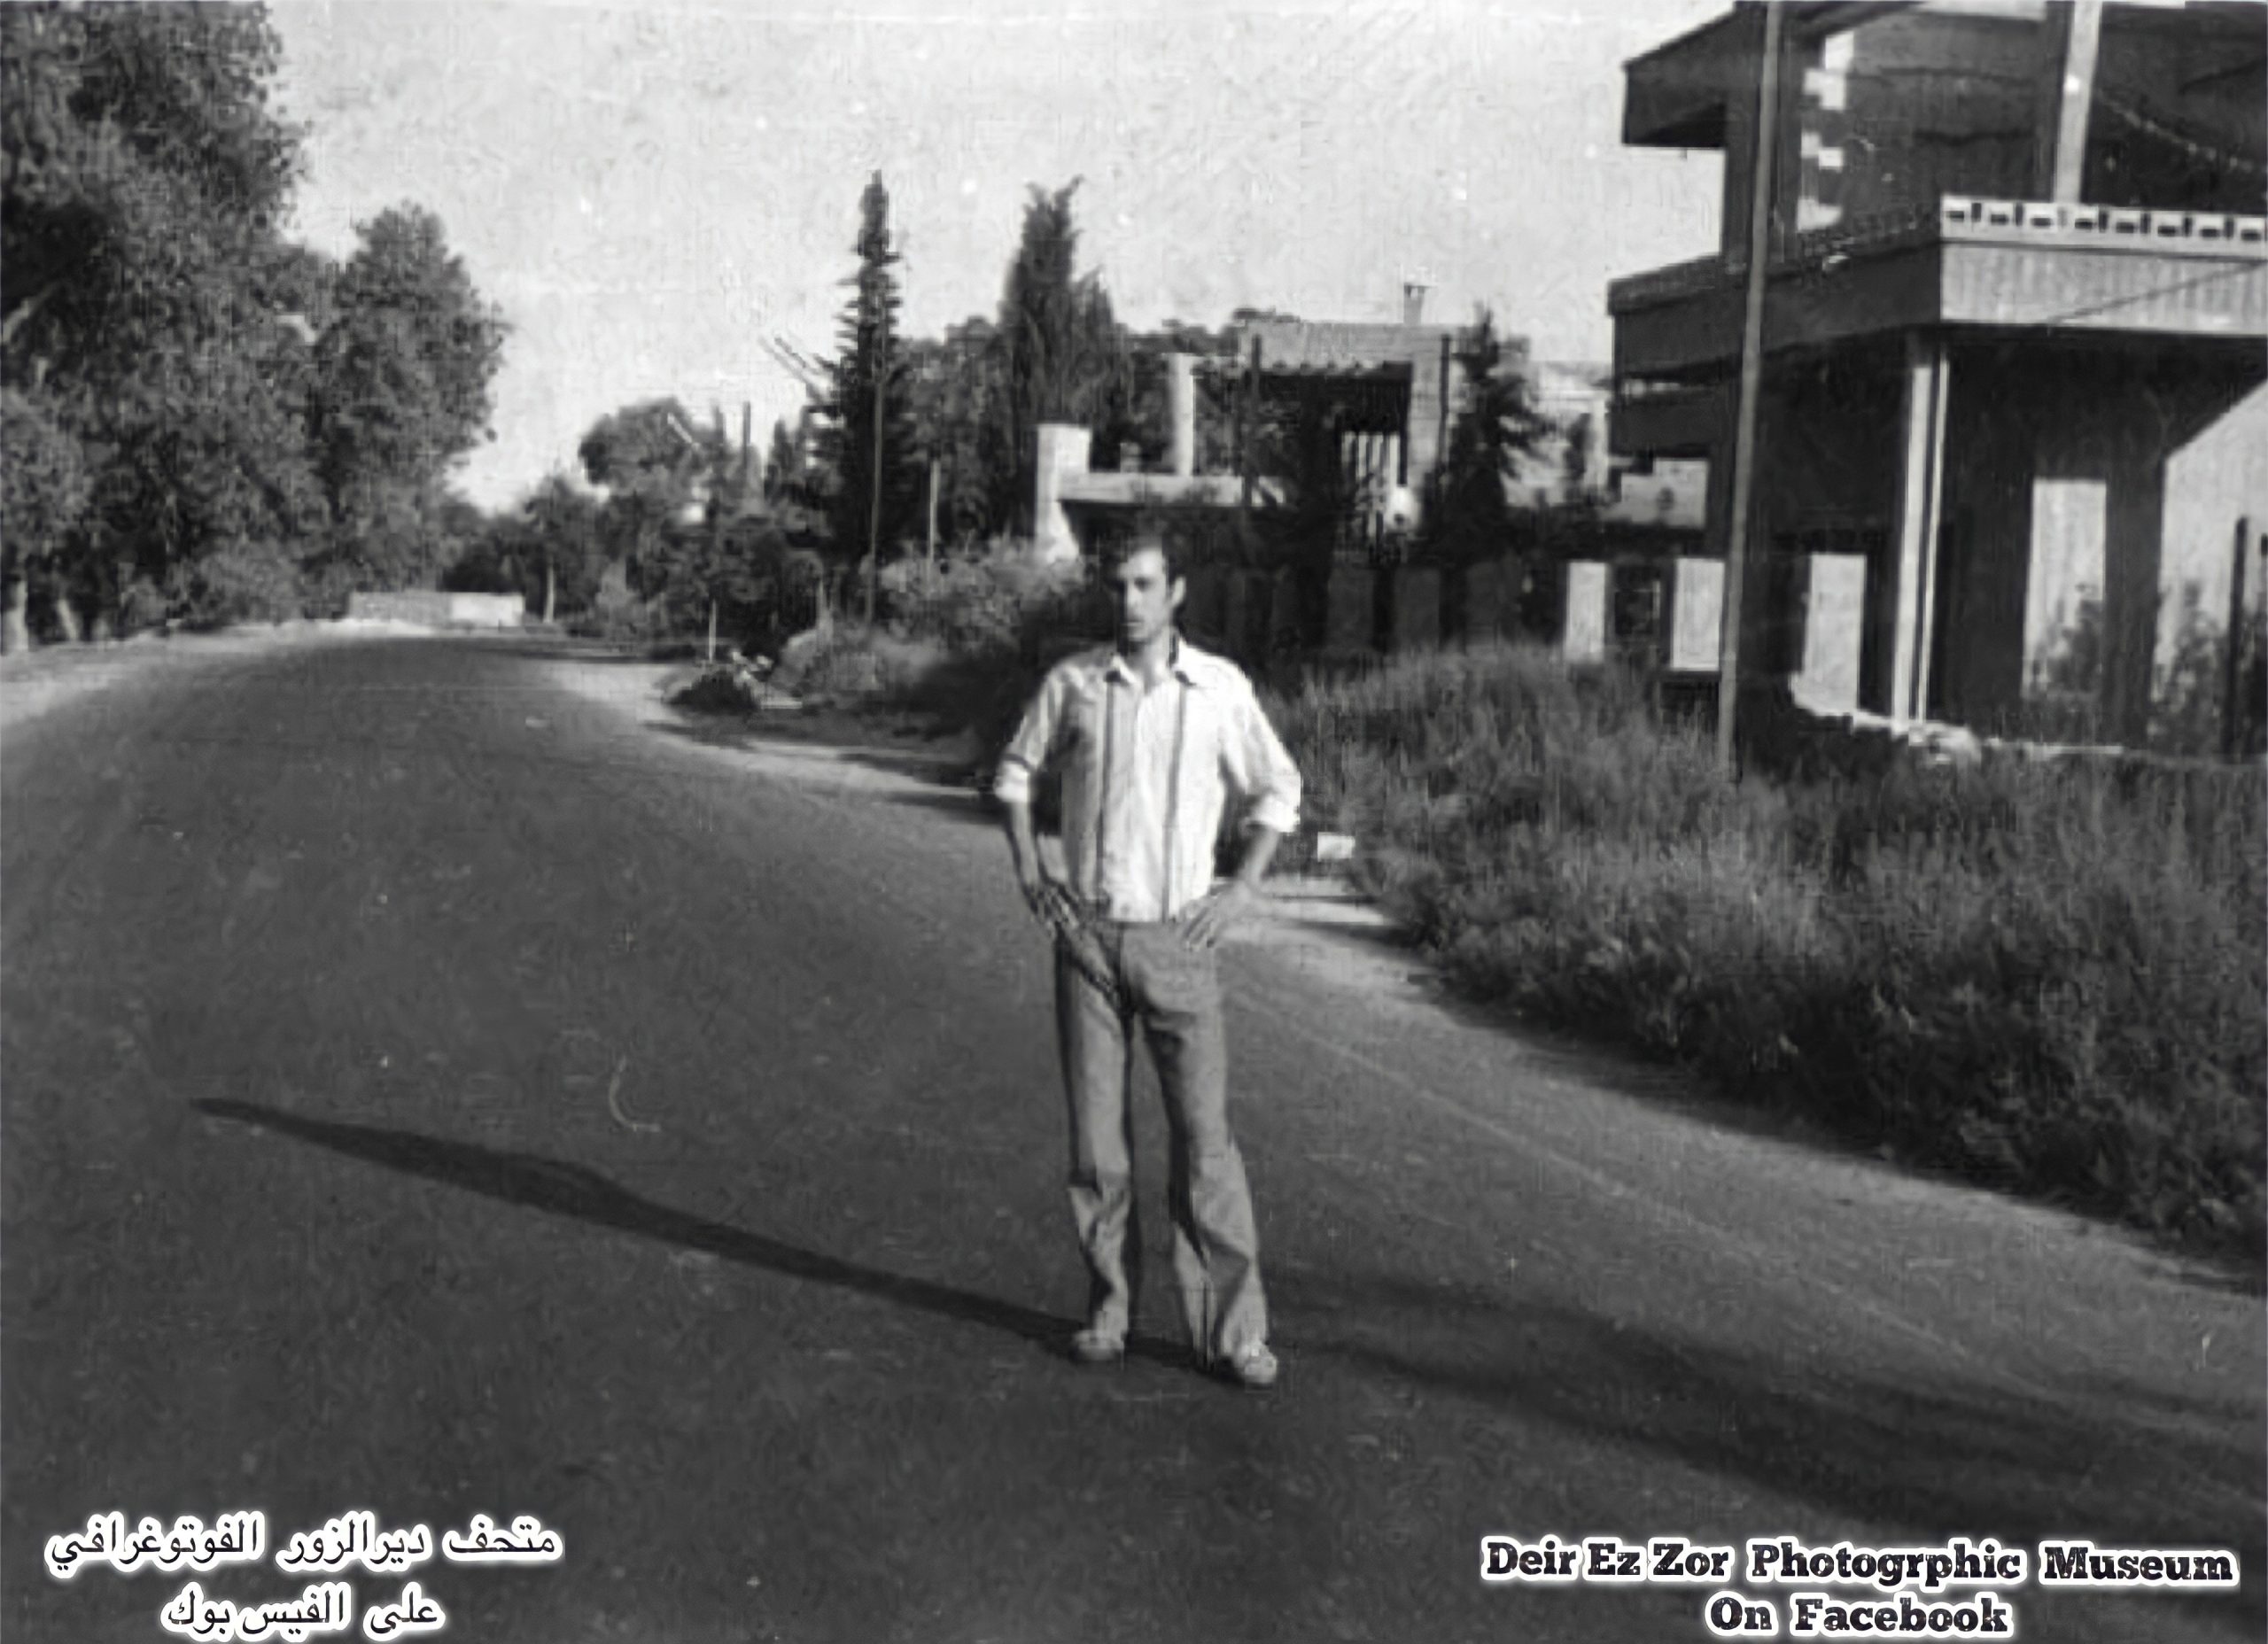 التاريخ السوري المعاصر - شارع النهر من الجهة الغربية في دير الزور عام 1966